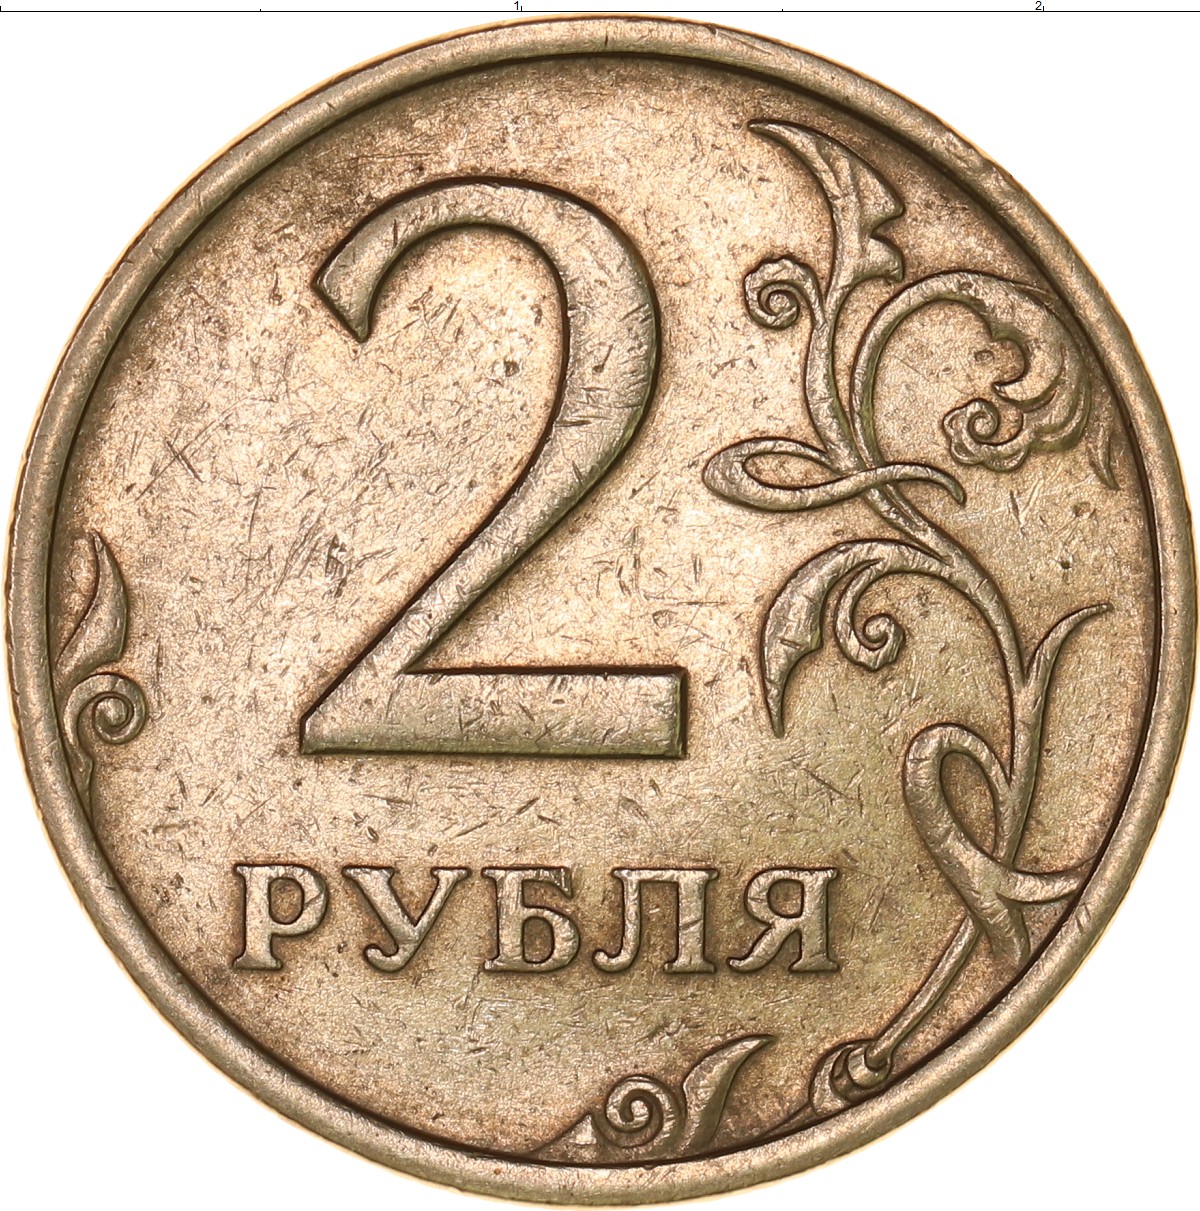 2 рубля 80 копеек. Монета 2 рубля. Монетки с цифрами. Изображение монет.